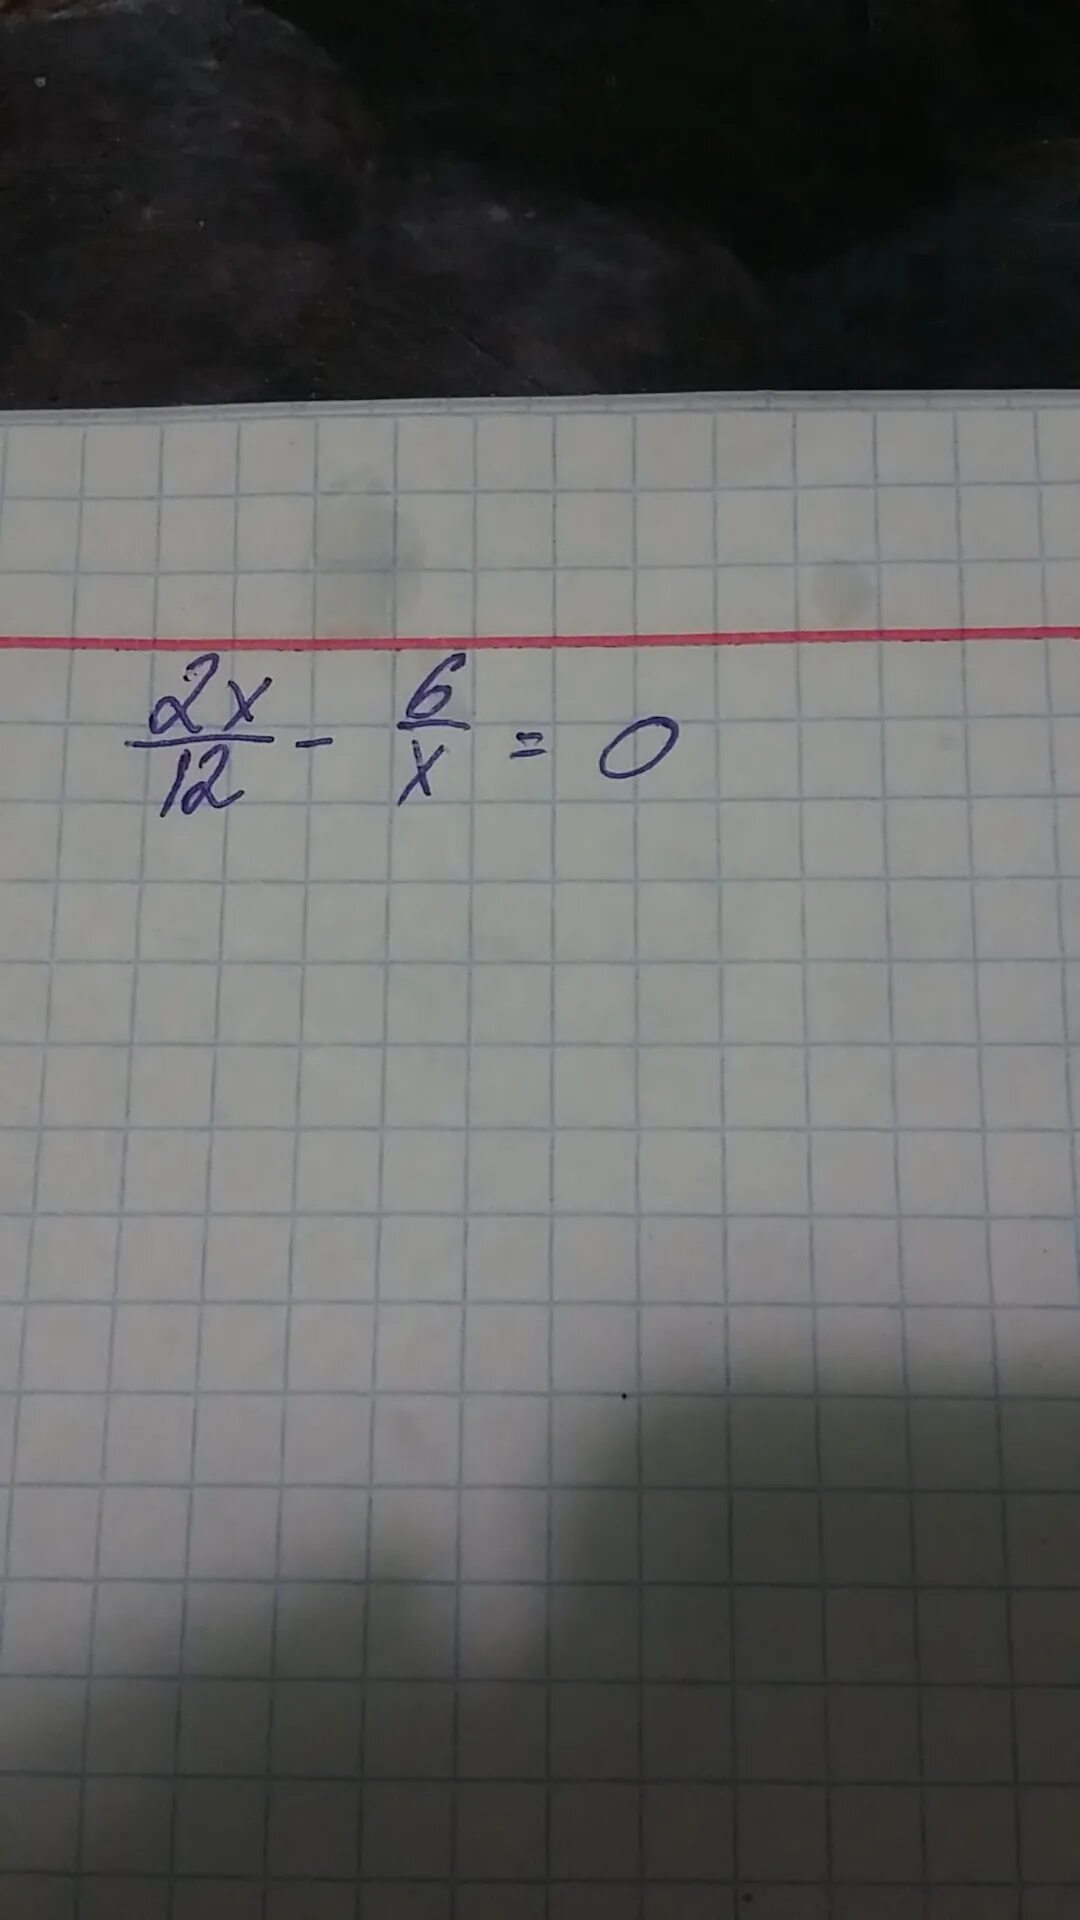 6 12 13 решение. 12х-6=0. 2х – 6 = 12. 6х=12. 6х^2-12х=0.